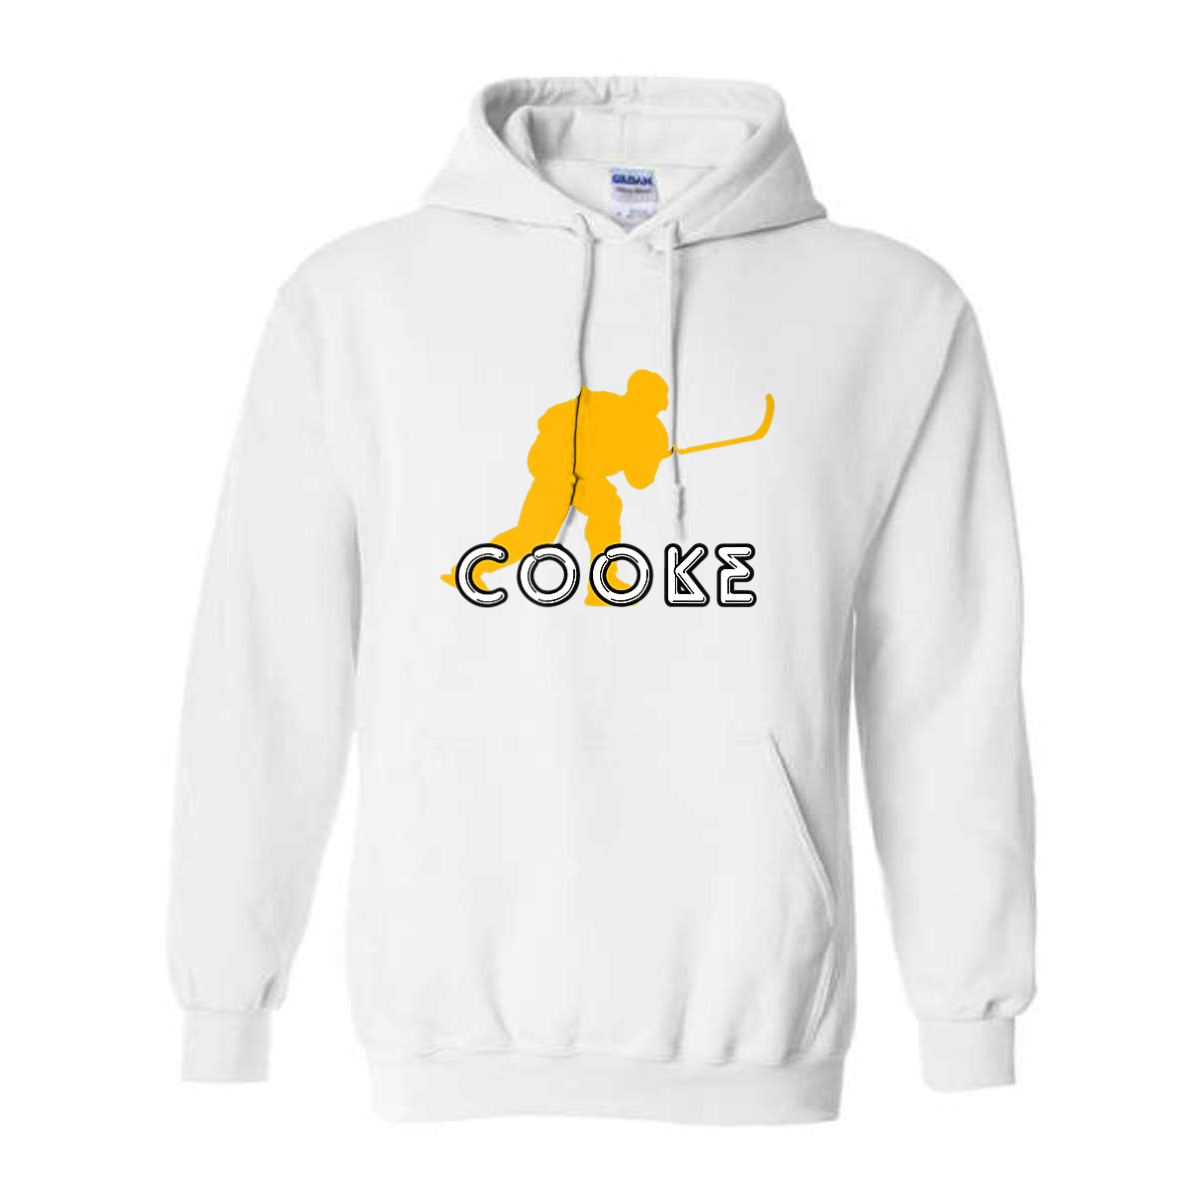 GT Cooke Logo Hoodie